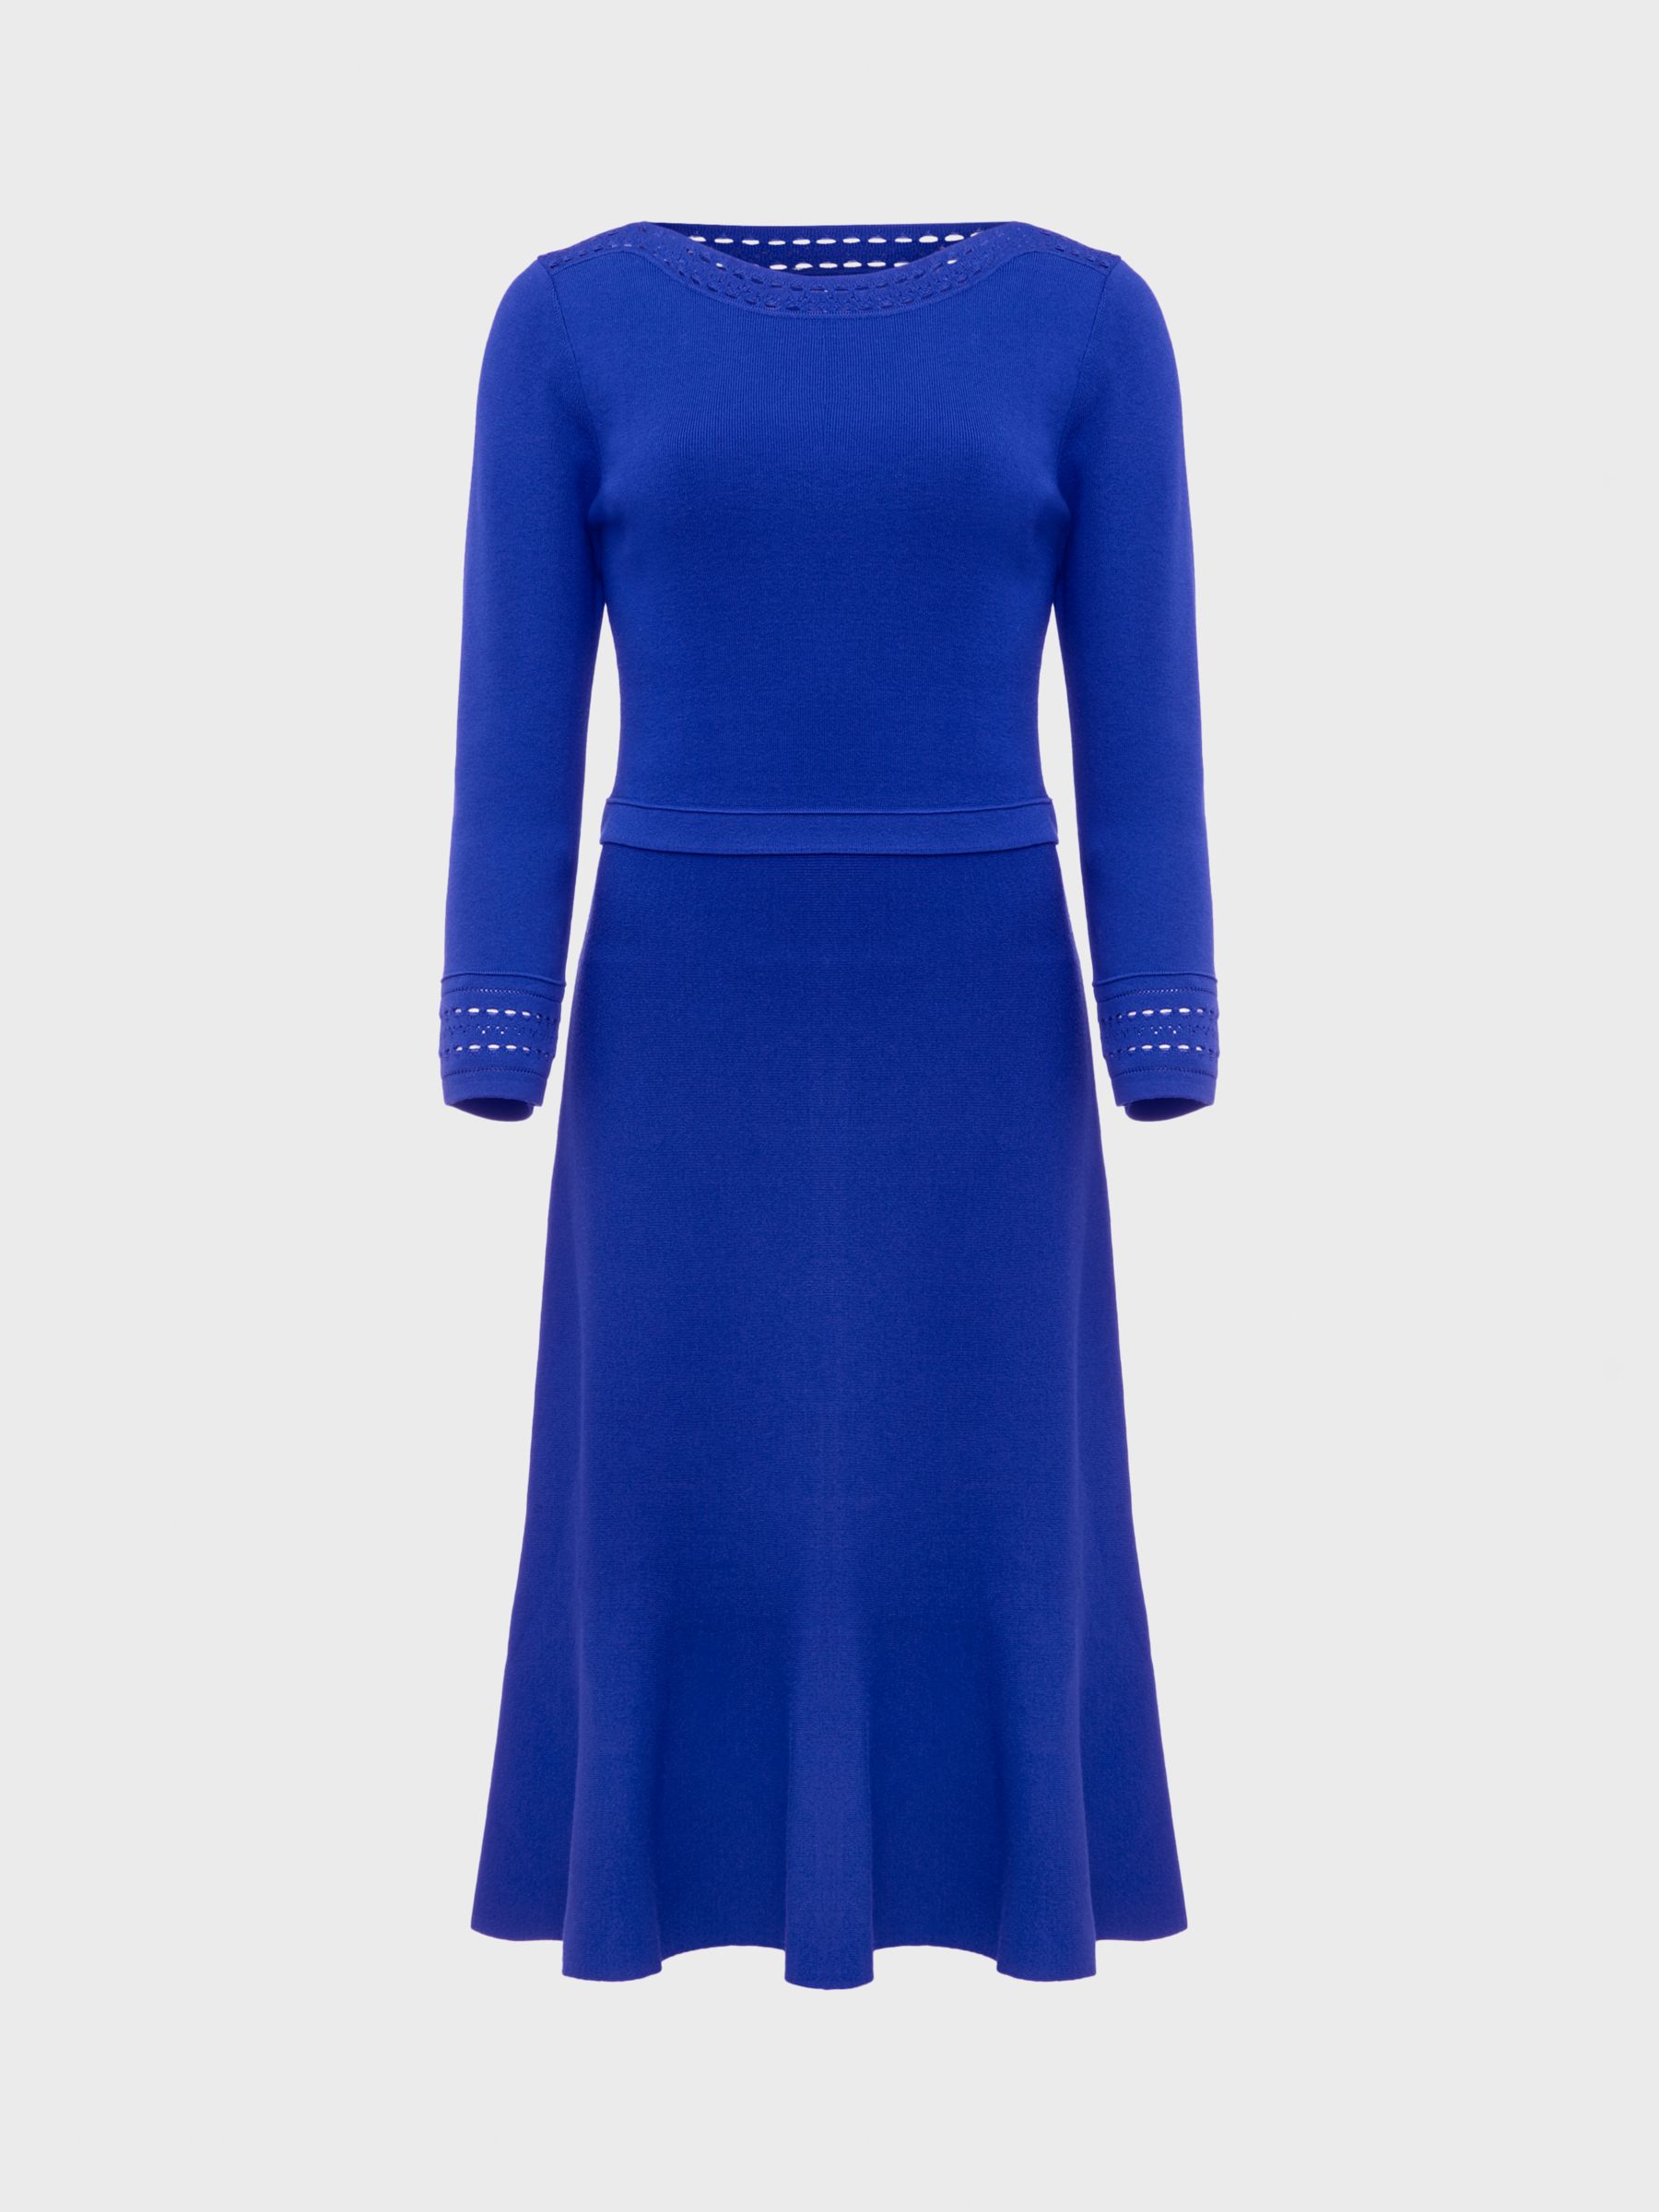 Hobbs Quinn Knitted Dress, Egyptian Blue, 10